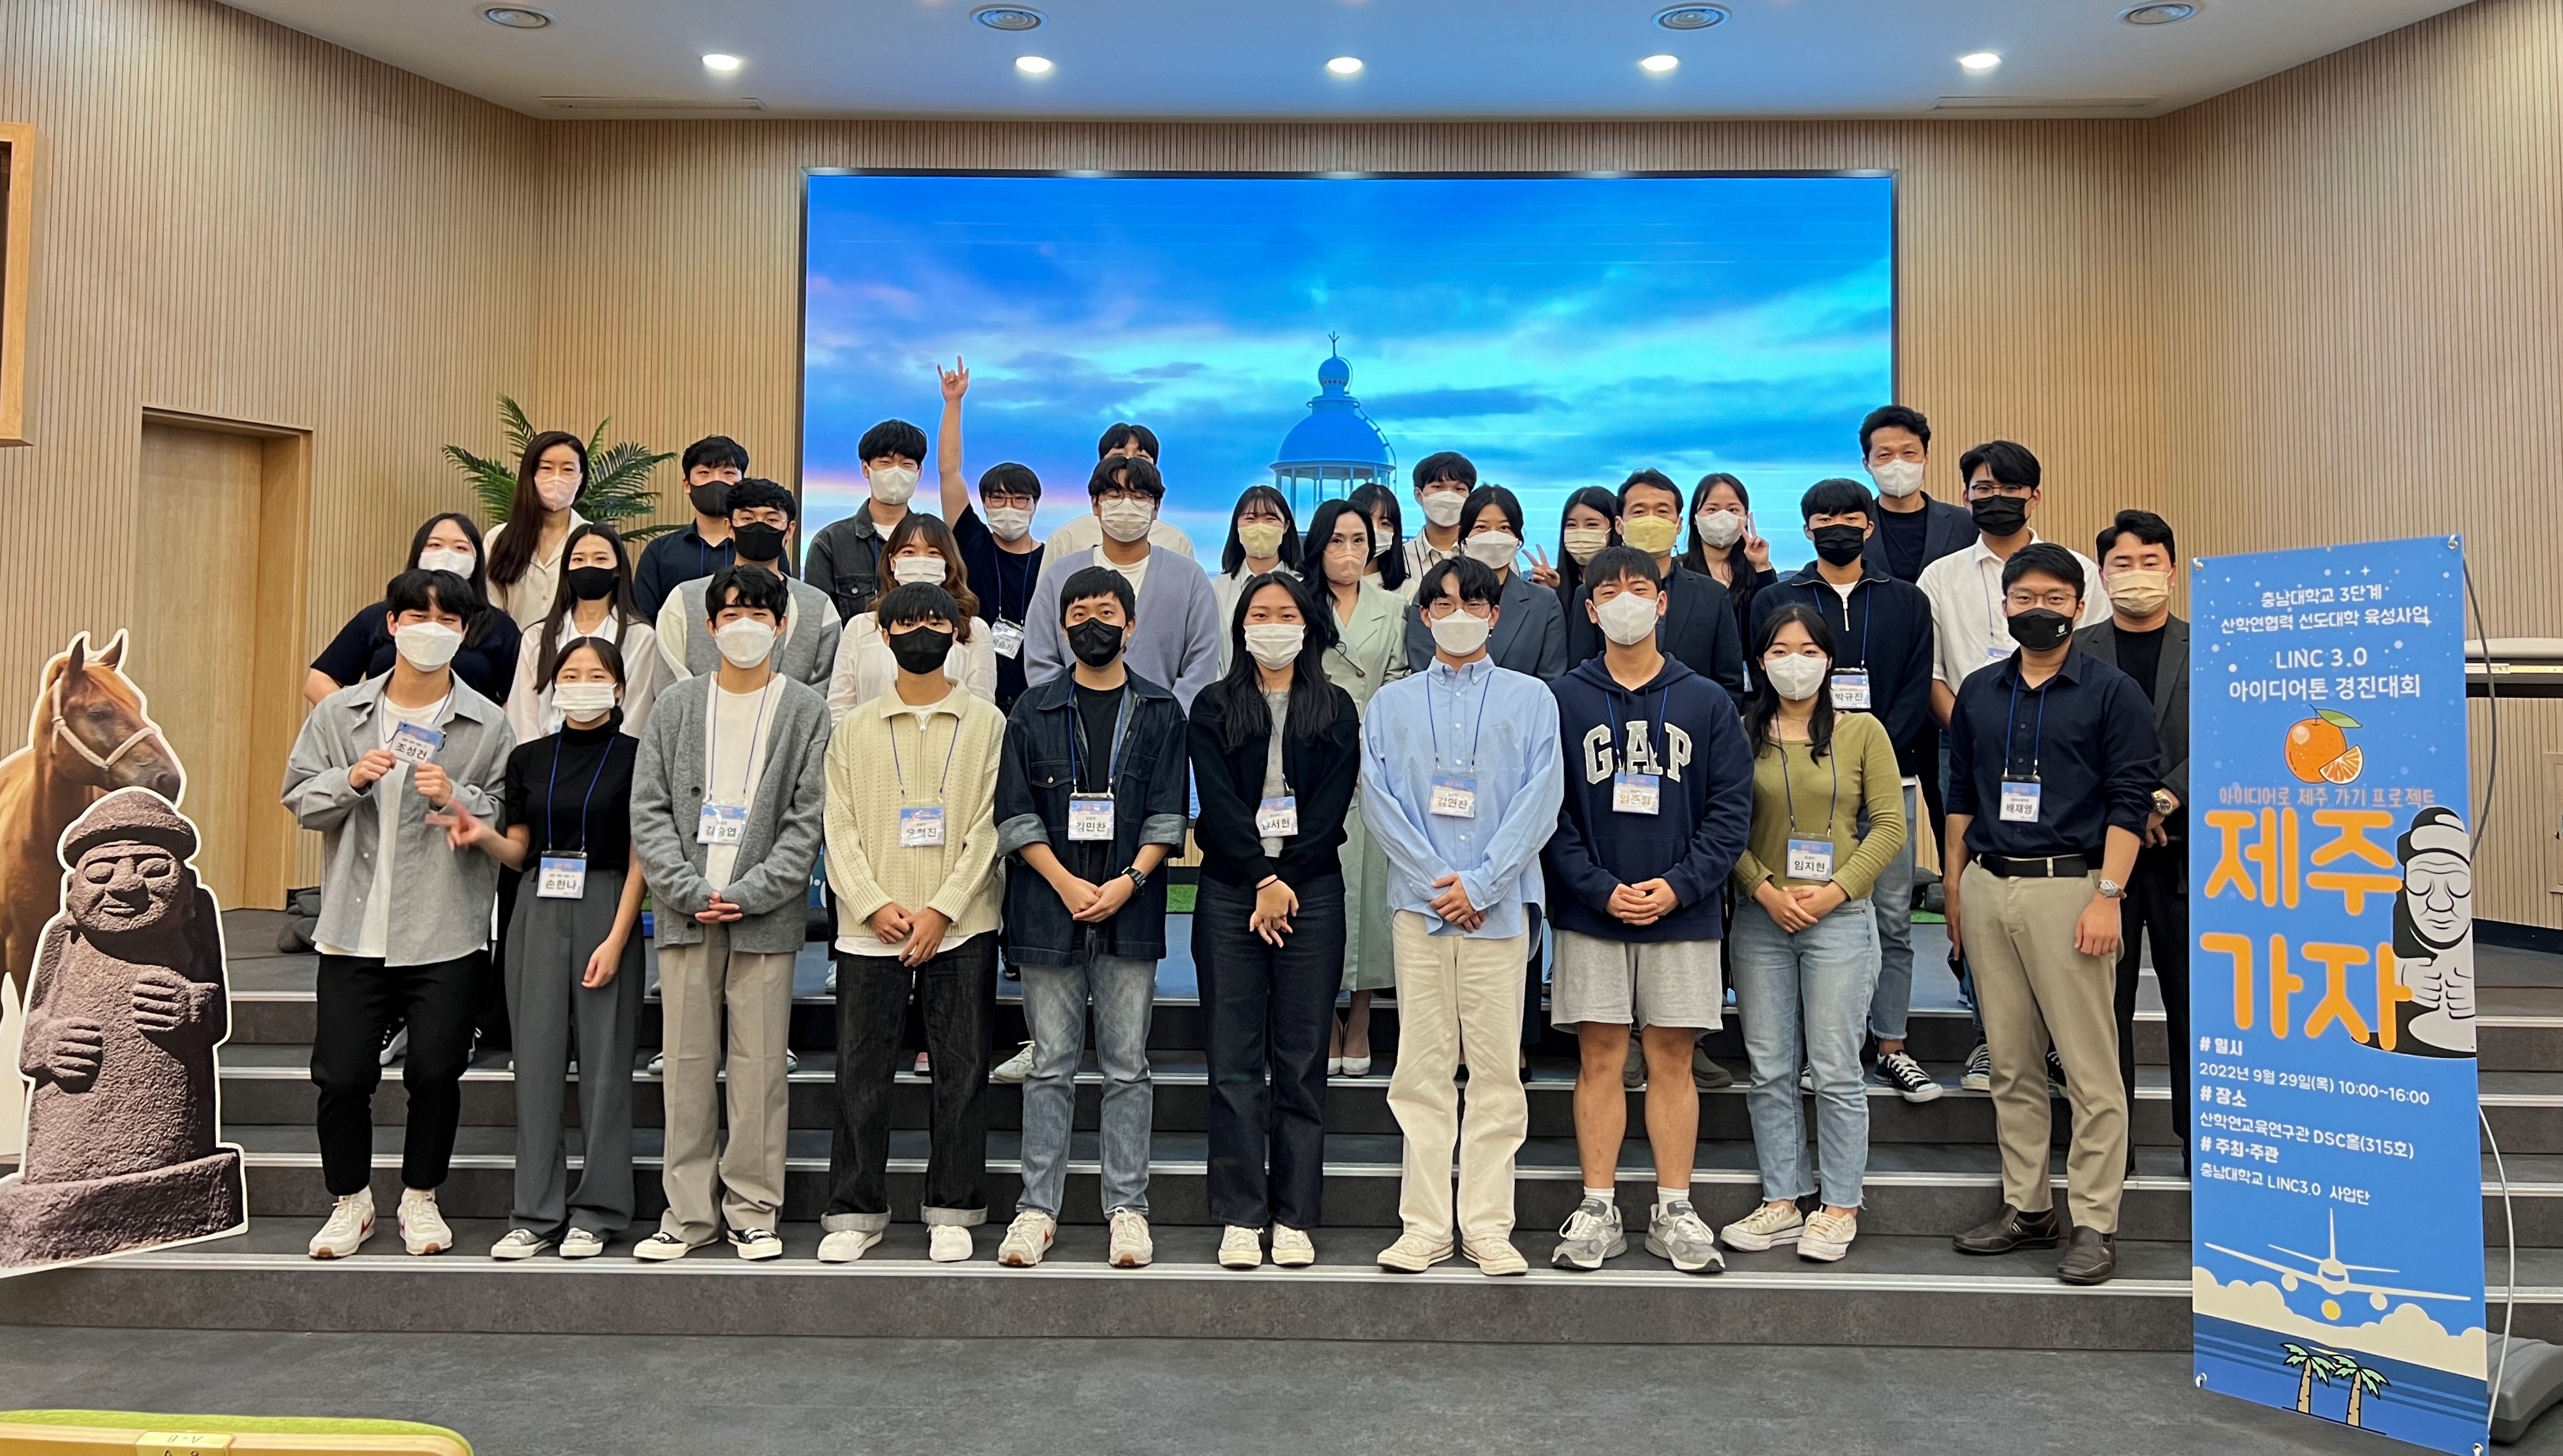 ‘제주가자, LINC3.0 아이디어톤 경진대회’ 개최 사진1